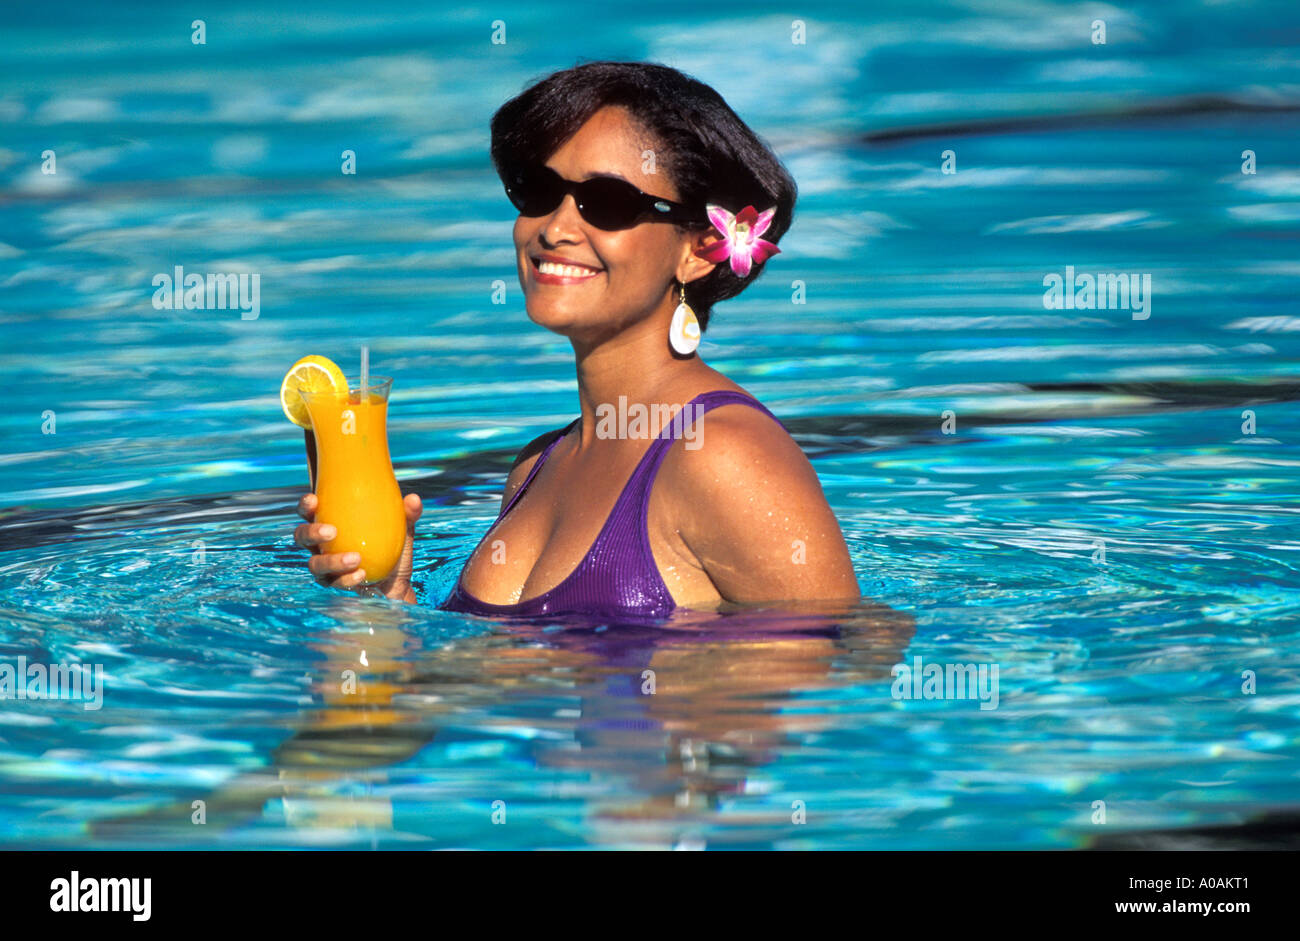 Caraibi Trinidad Tobago Gissele Ovest Ex Trinidad Miss Mondo gustando un drink fresco al lato della piscina Foto Stock